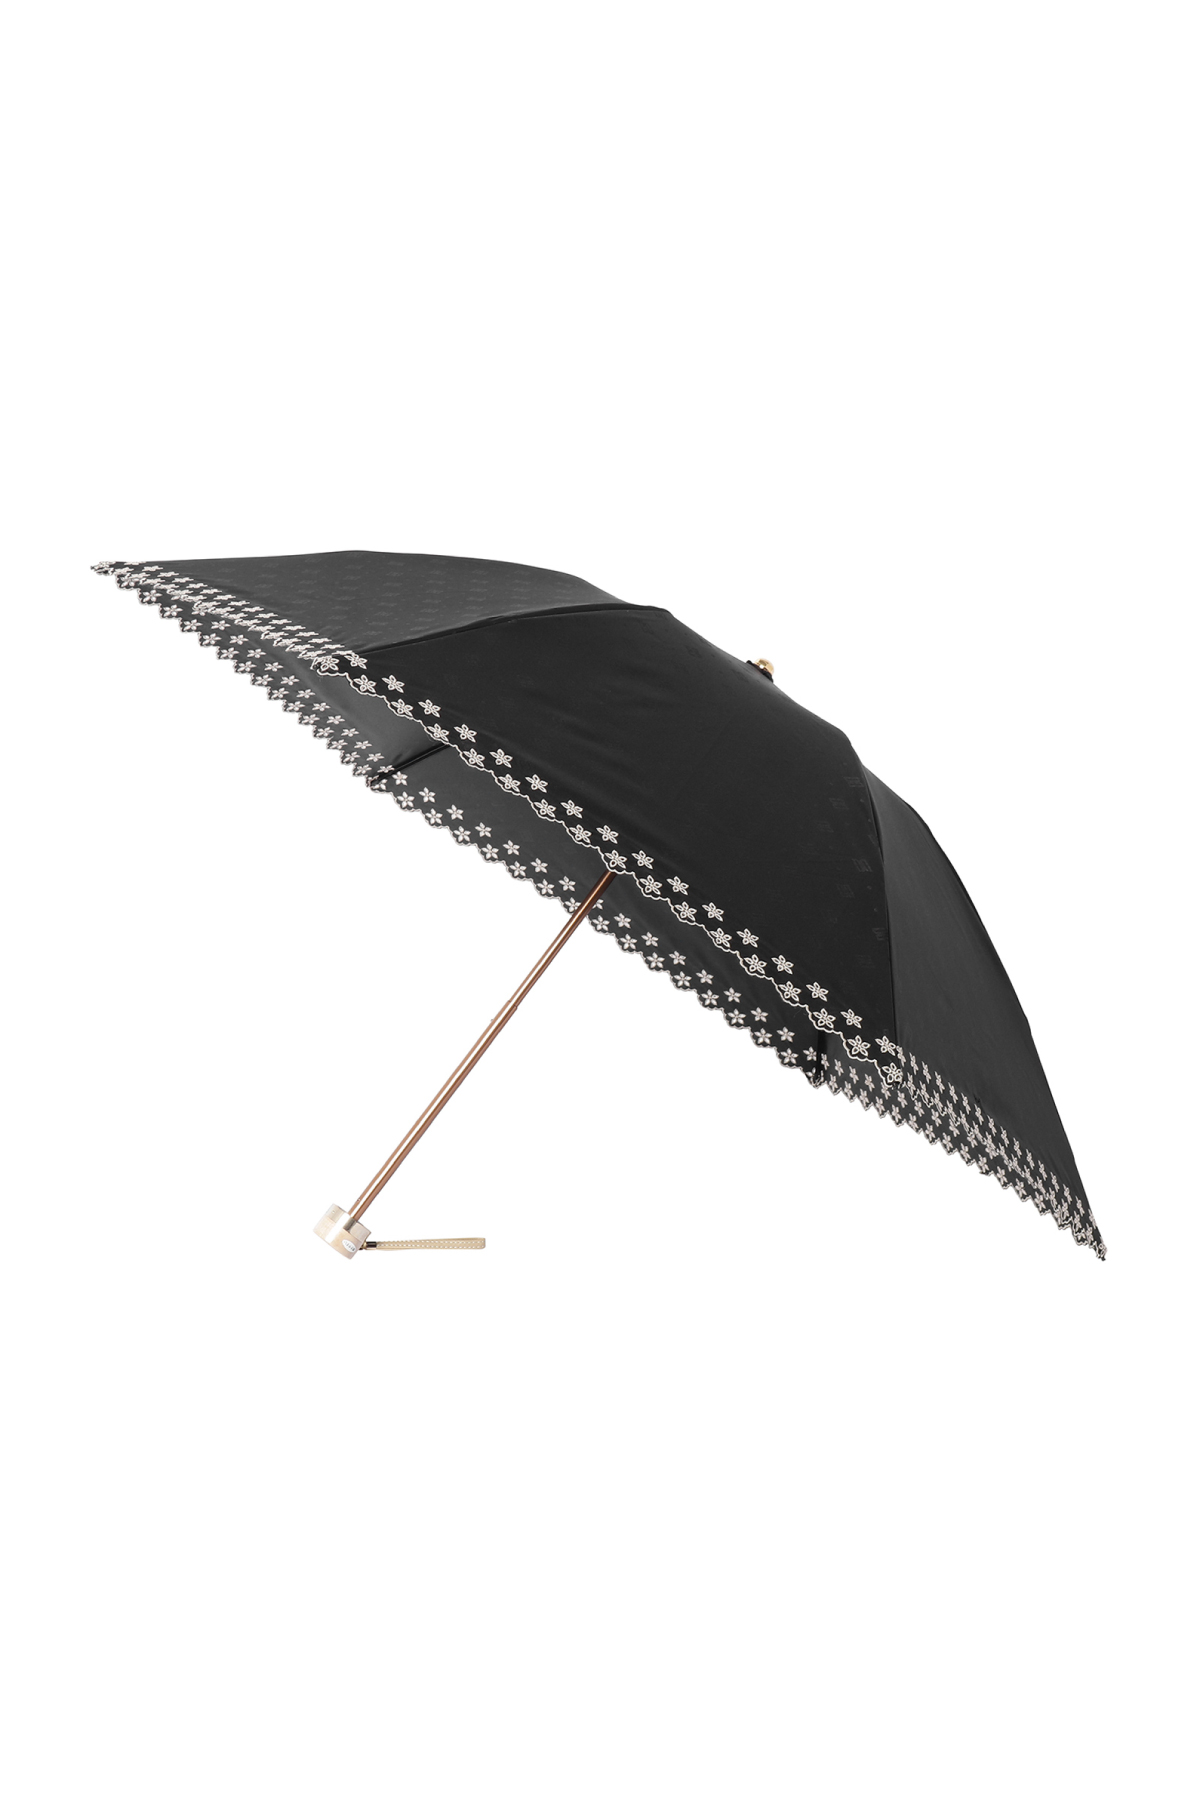 【日傘】ミニ折りたたみ傘ドットジャカード刺繍 詳細画像 15/ブラック